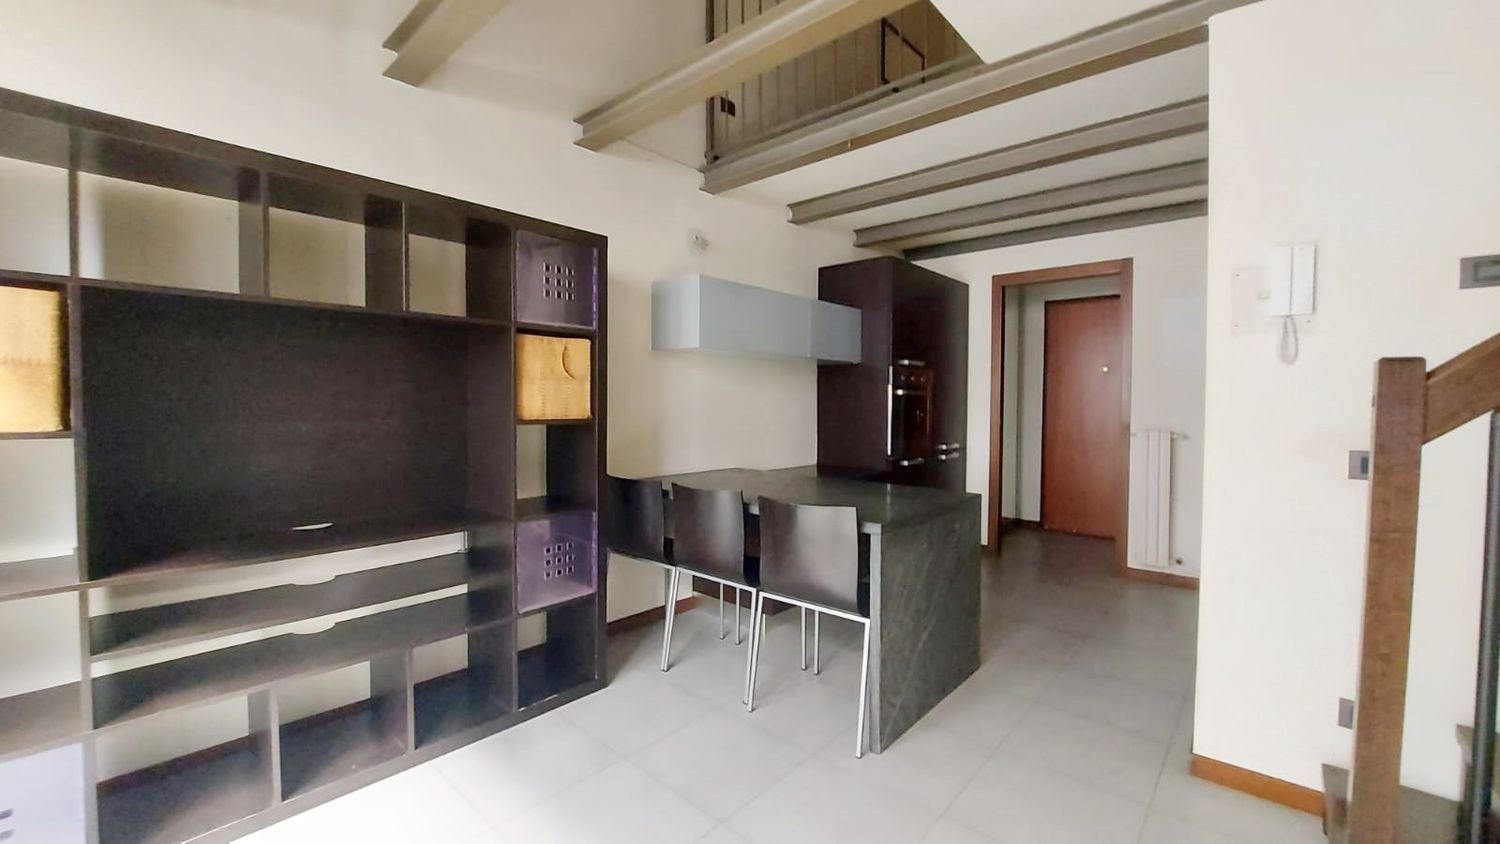 Duplex in vendita a Seregno, 2 locali, prezzo € 145.000 | PortaleAgenzieImmobiliari.it